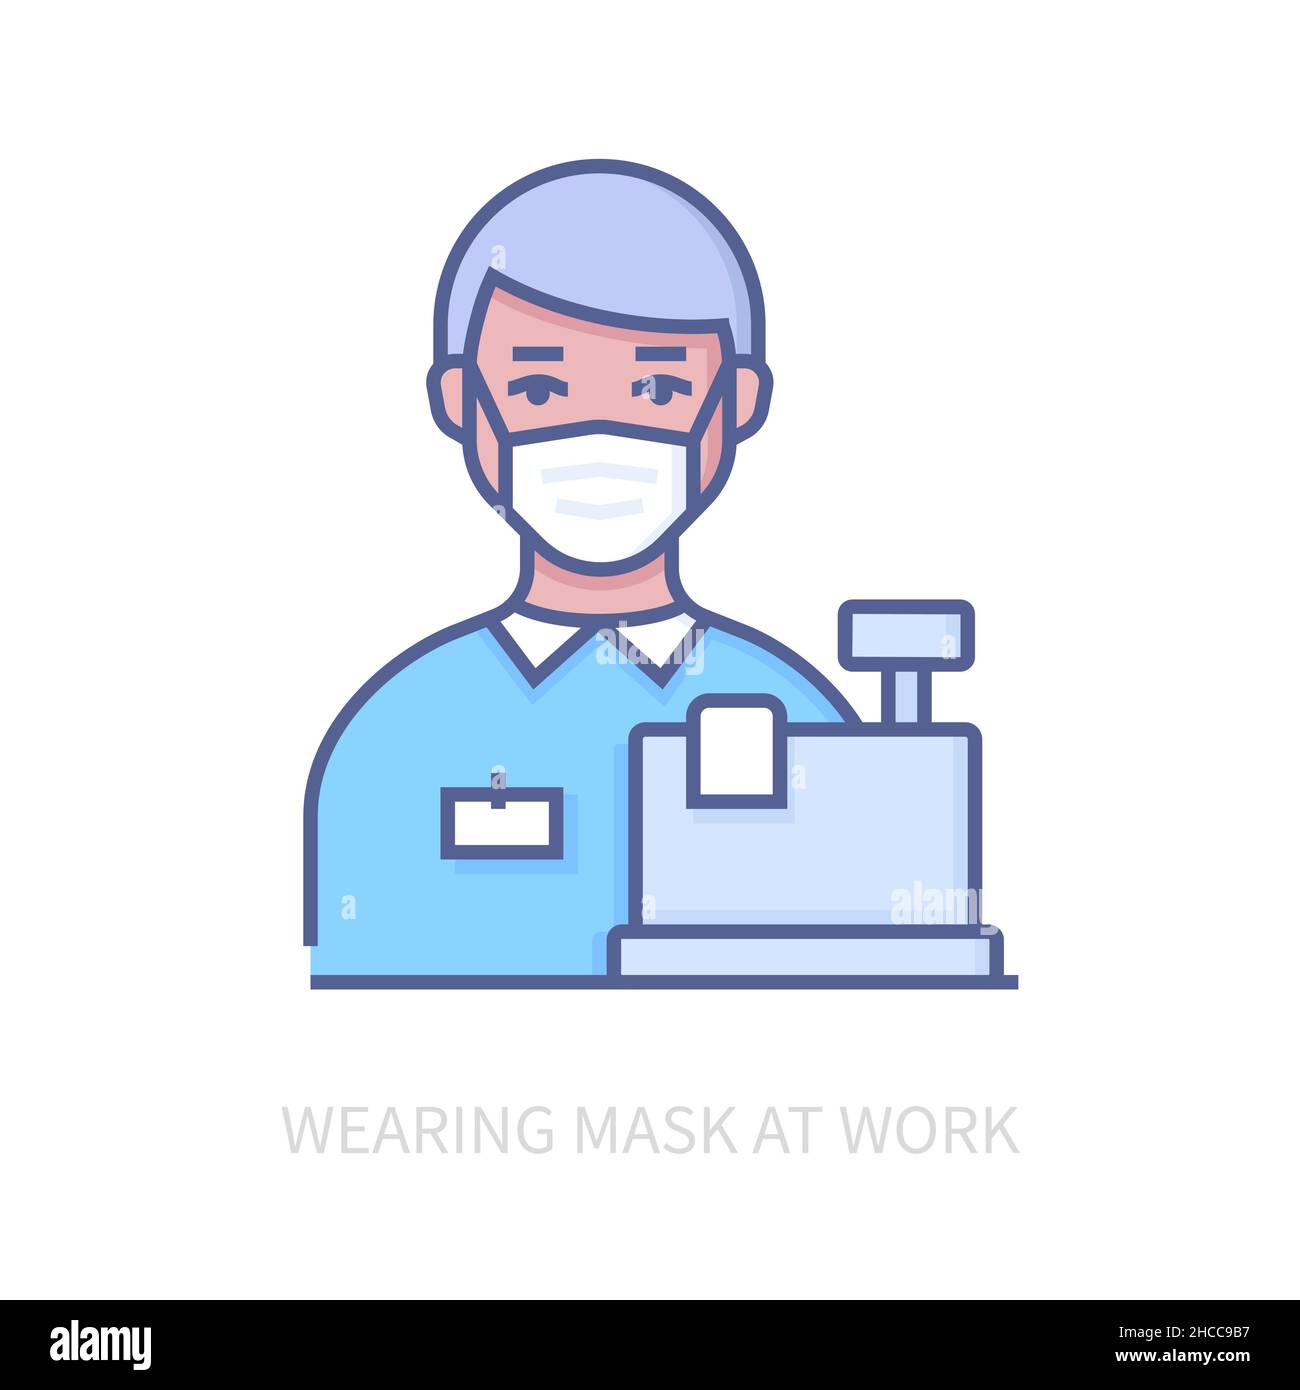 Tragen Sie bei der Arbeit eine Maske - ein modernes, farblich gestalterisches Symbol auf weißem Hintergrund. Ordentliches, detailliertes Bild des Kassierers mit einfachem Atemschutz Stock Vektor